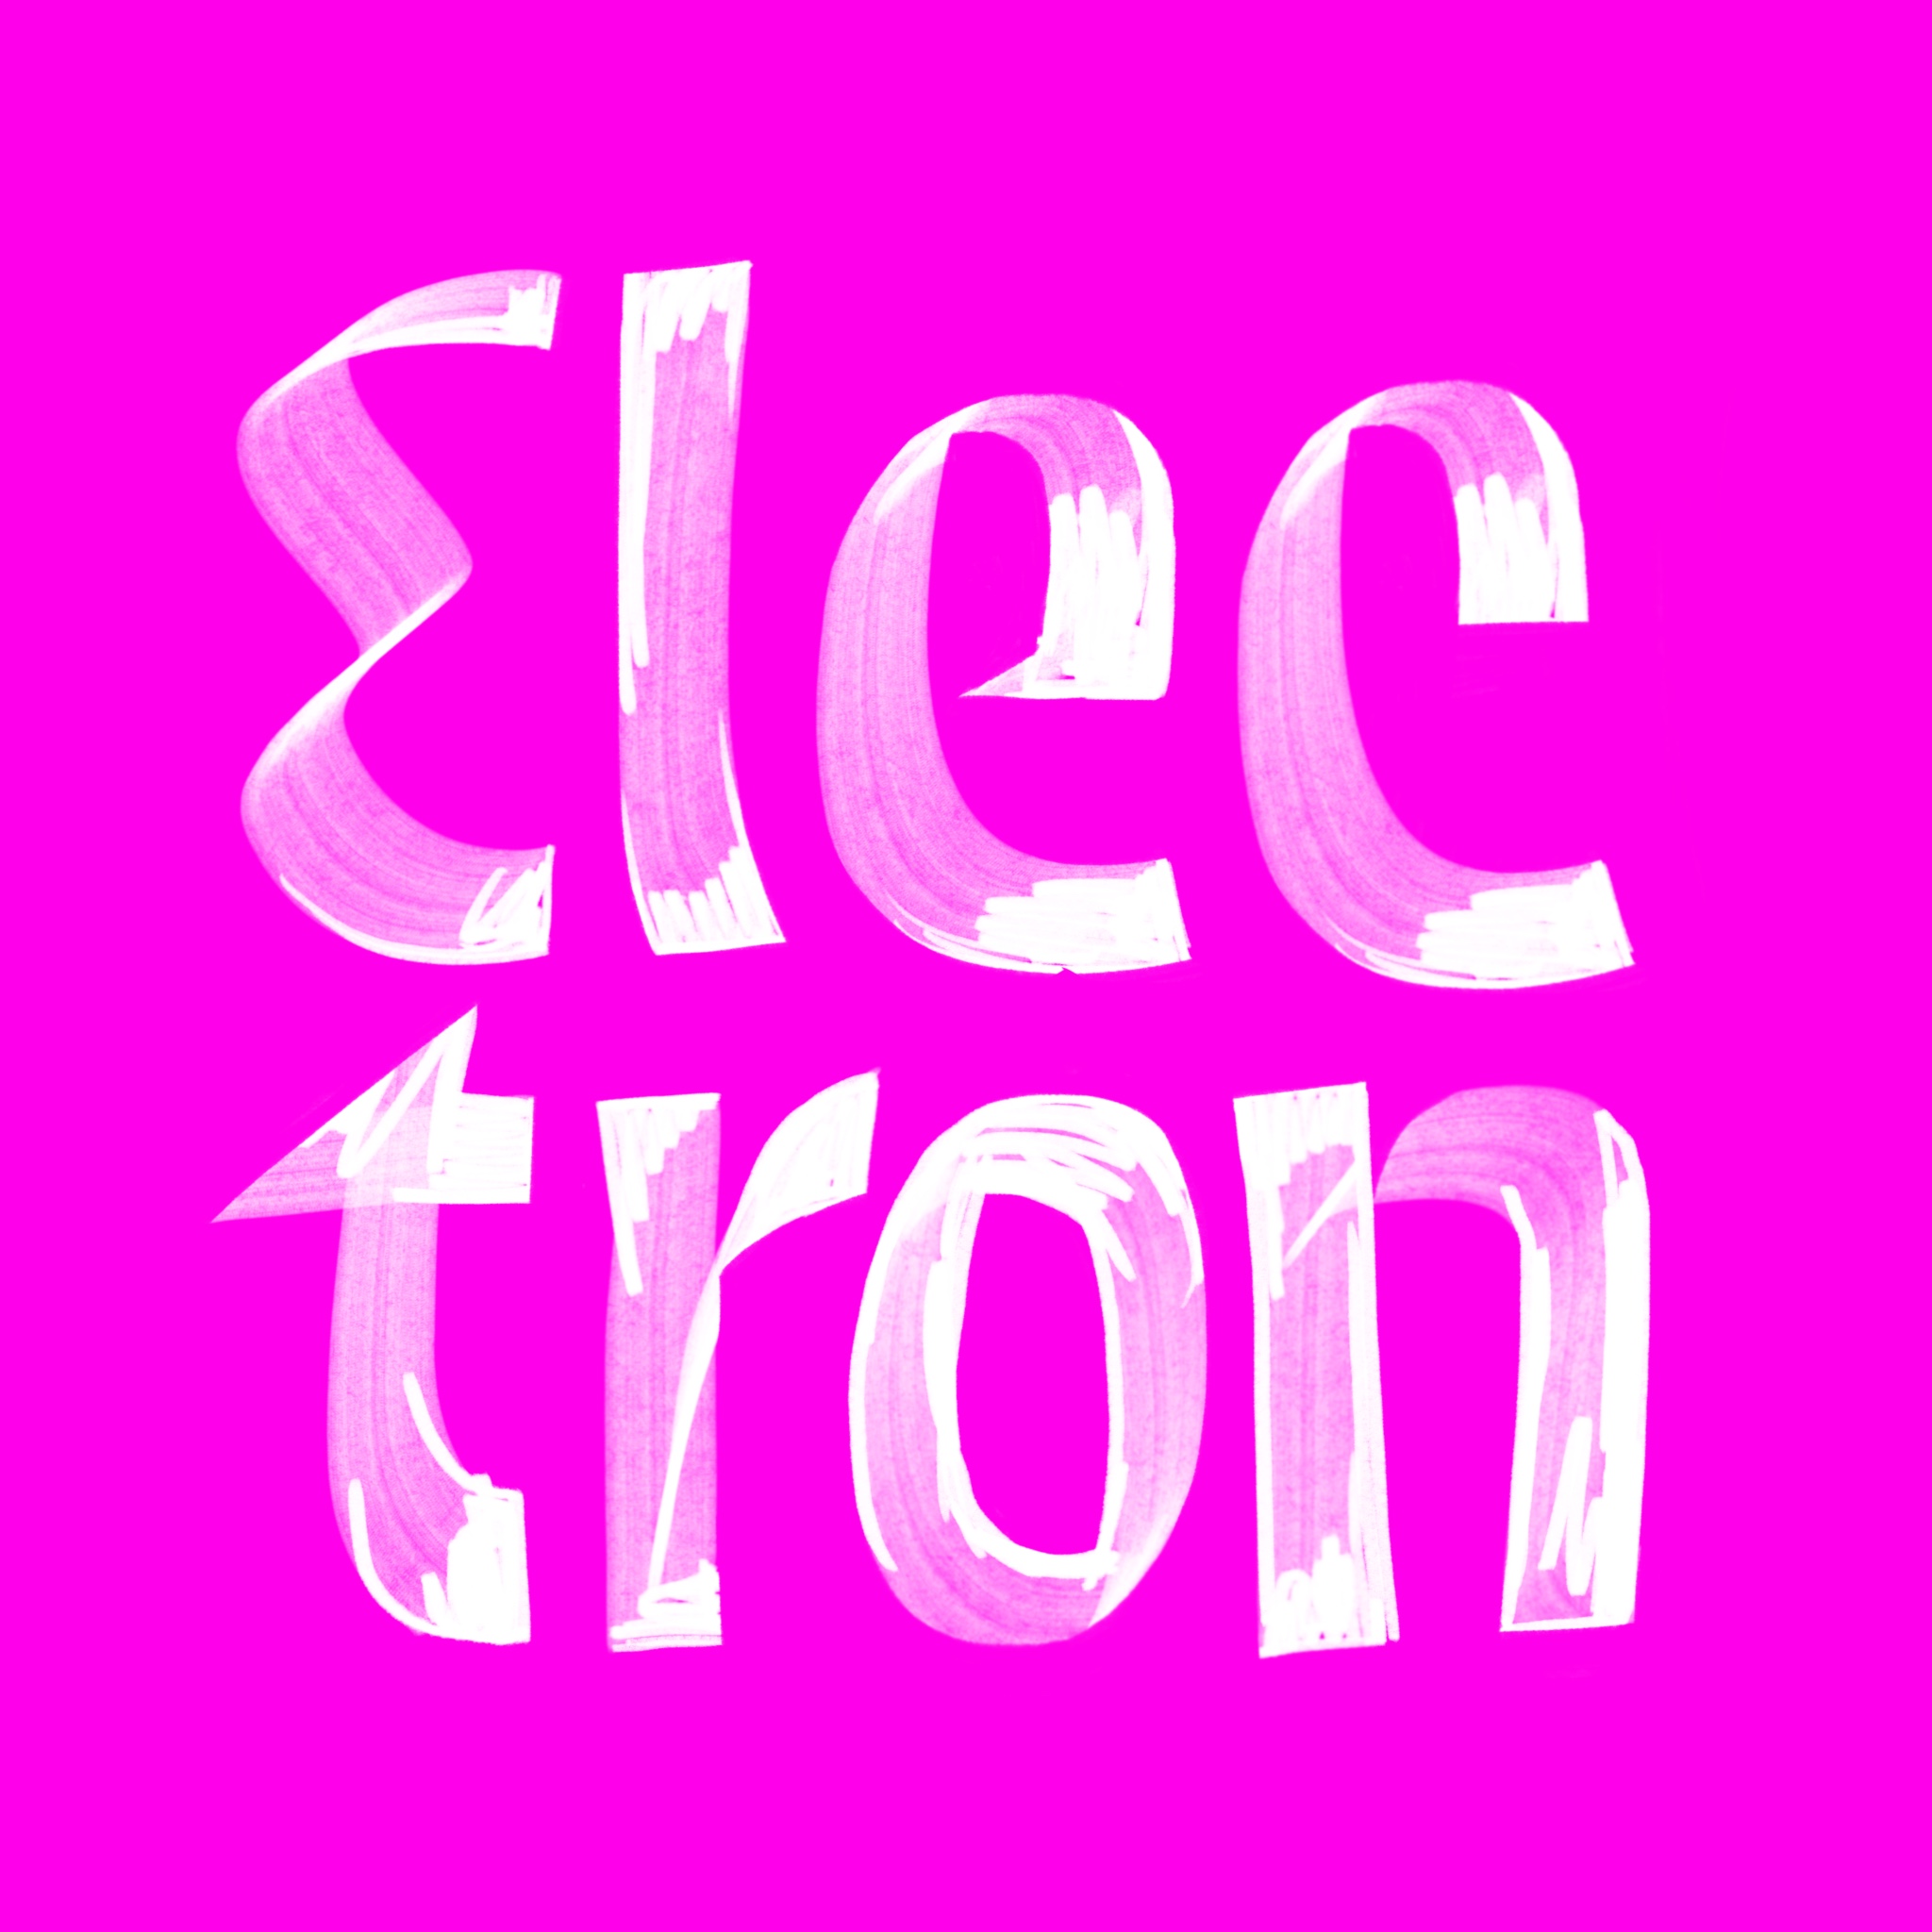 Electron, brushed